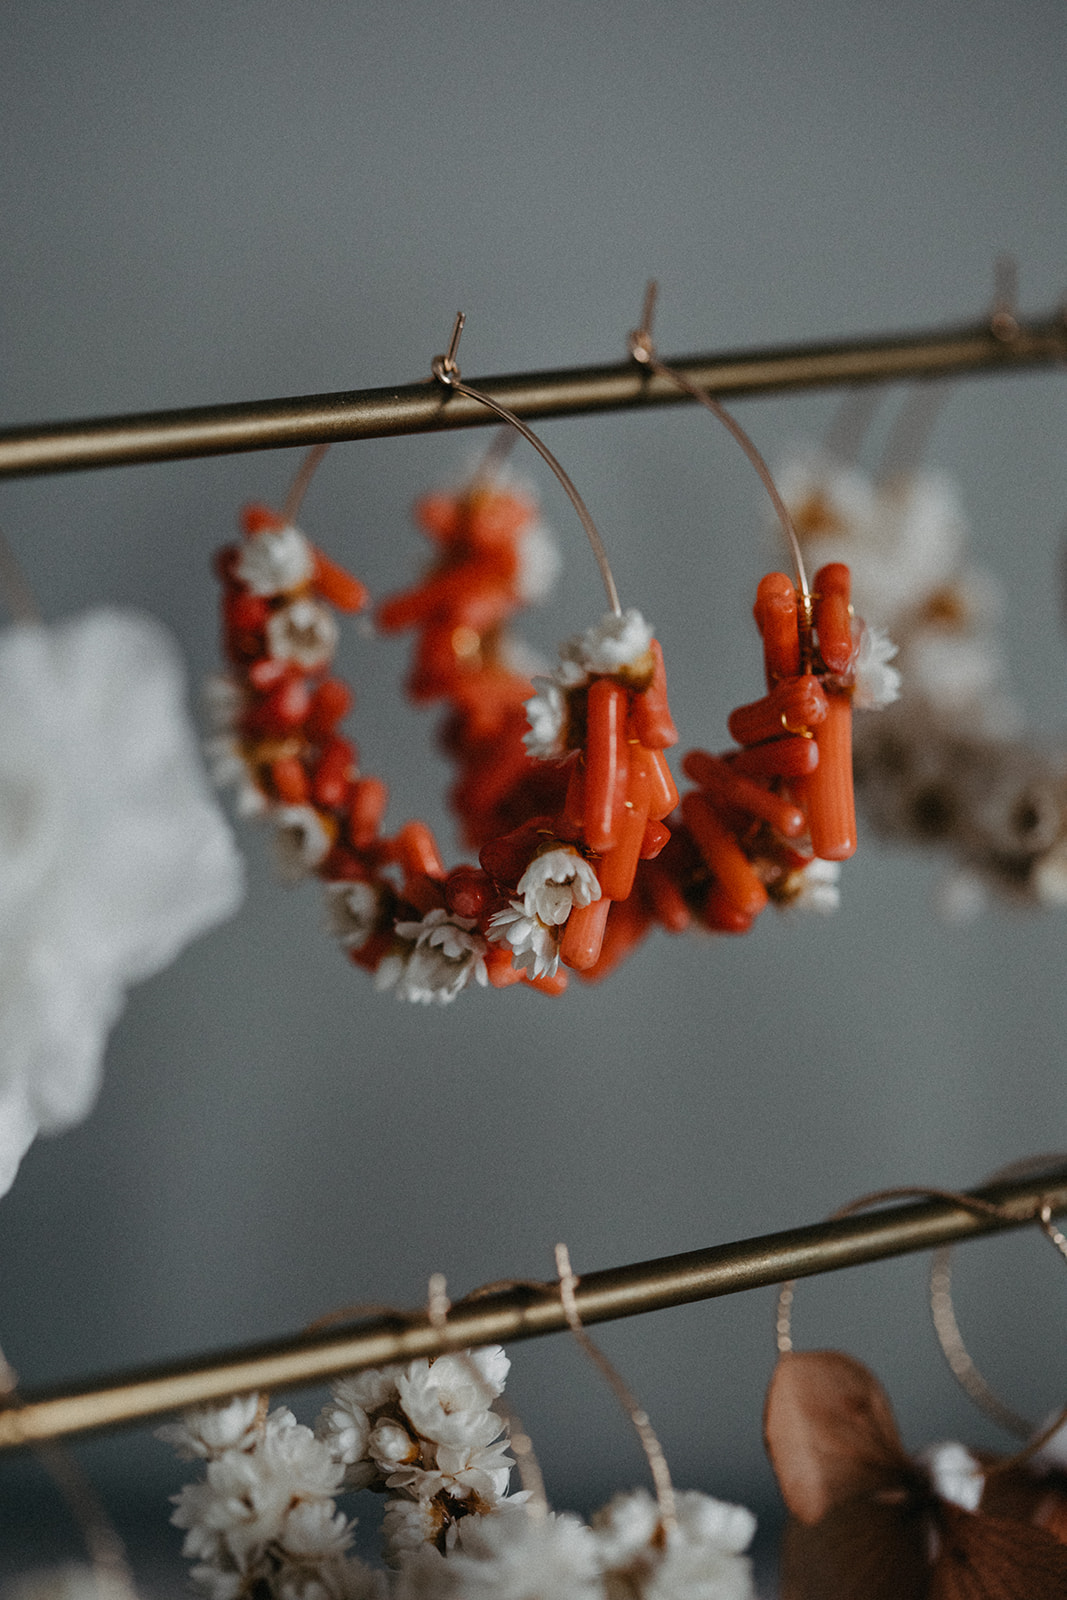 créoles corail végétal et fleurs séchées mariée bohème romantique boucle d'oreille bijou made in france